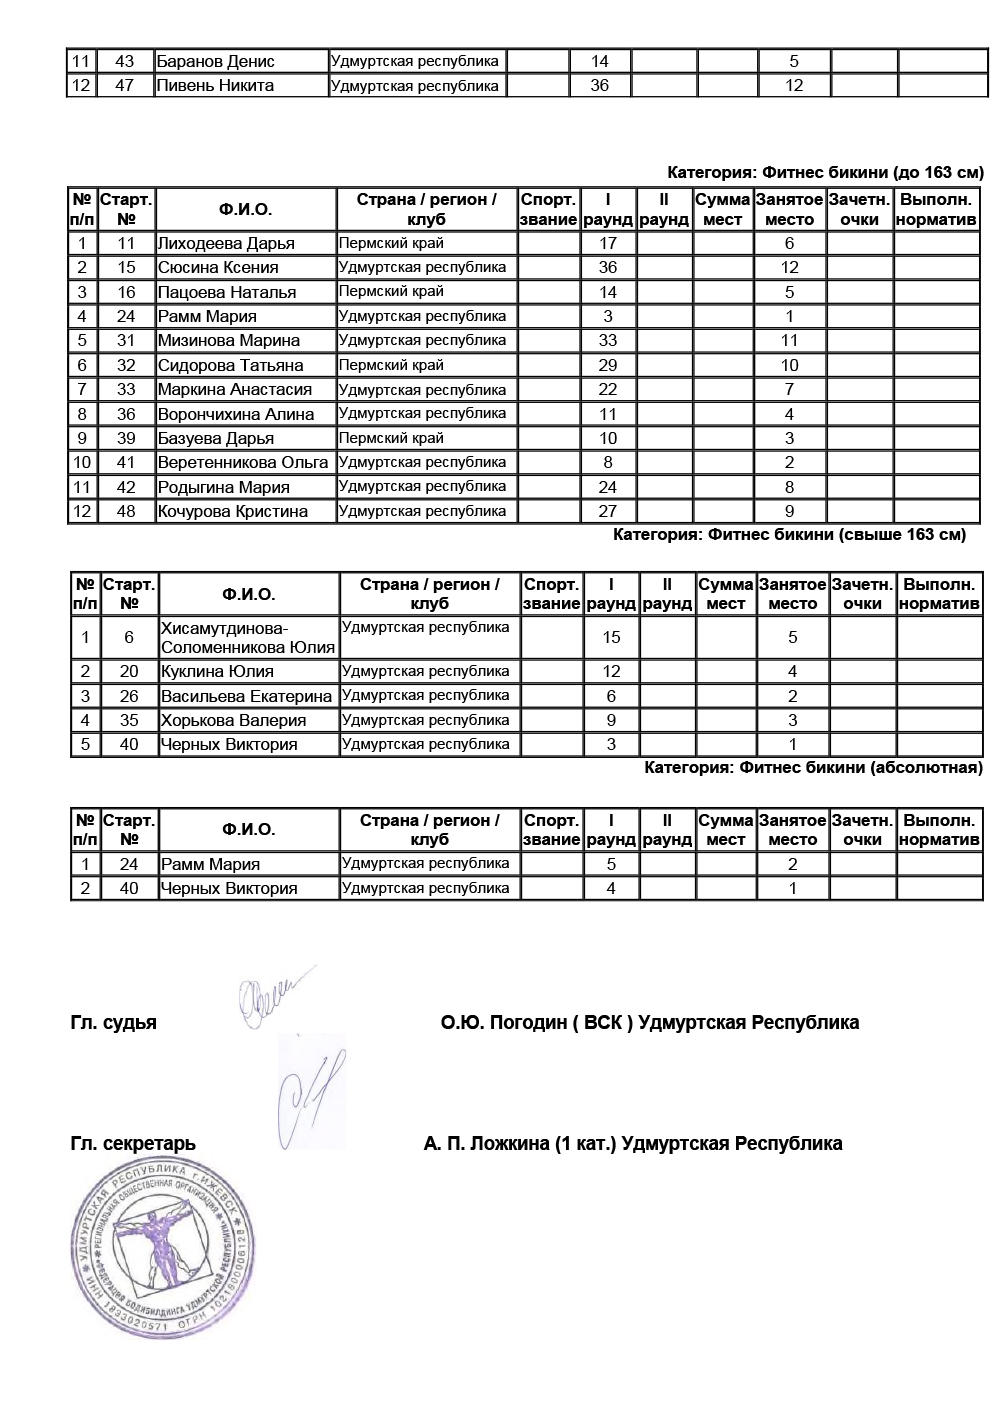 Чемпионат Республики Удмуртия по бодибилдингу - 2019